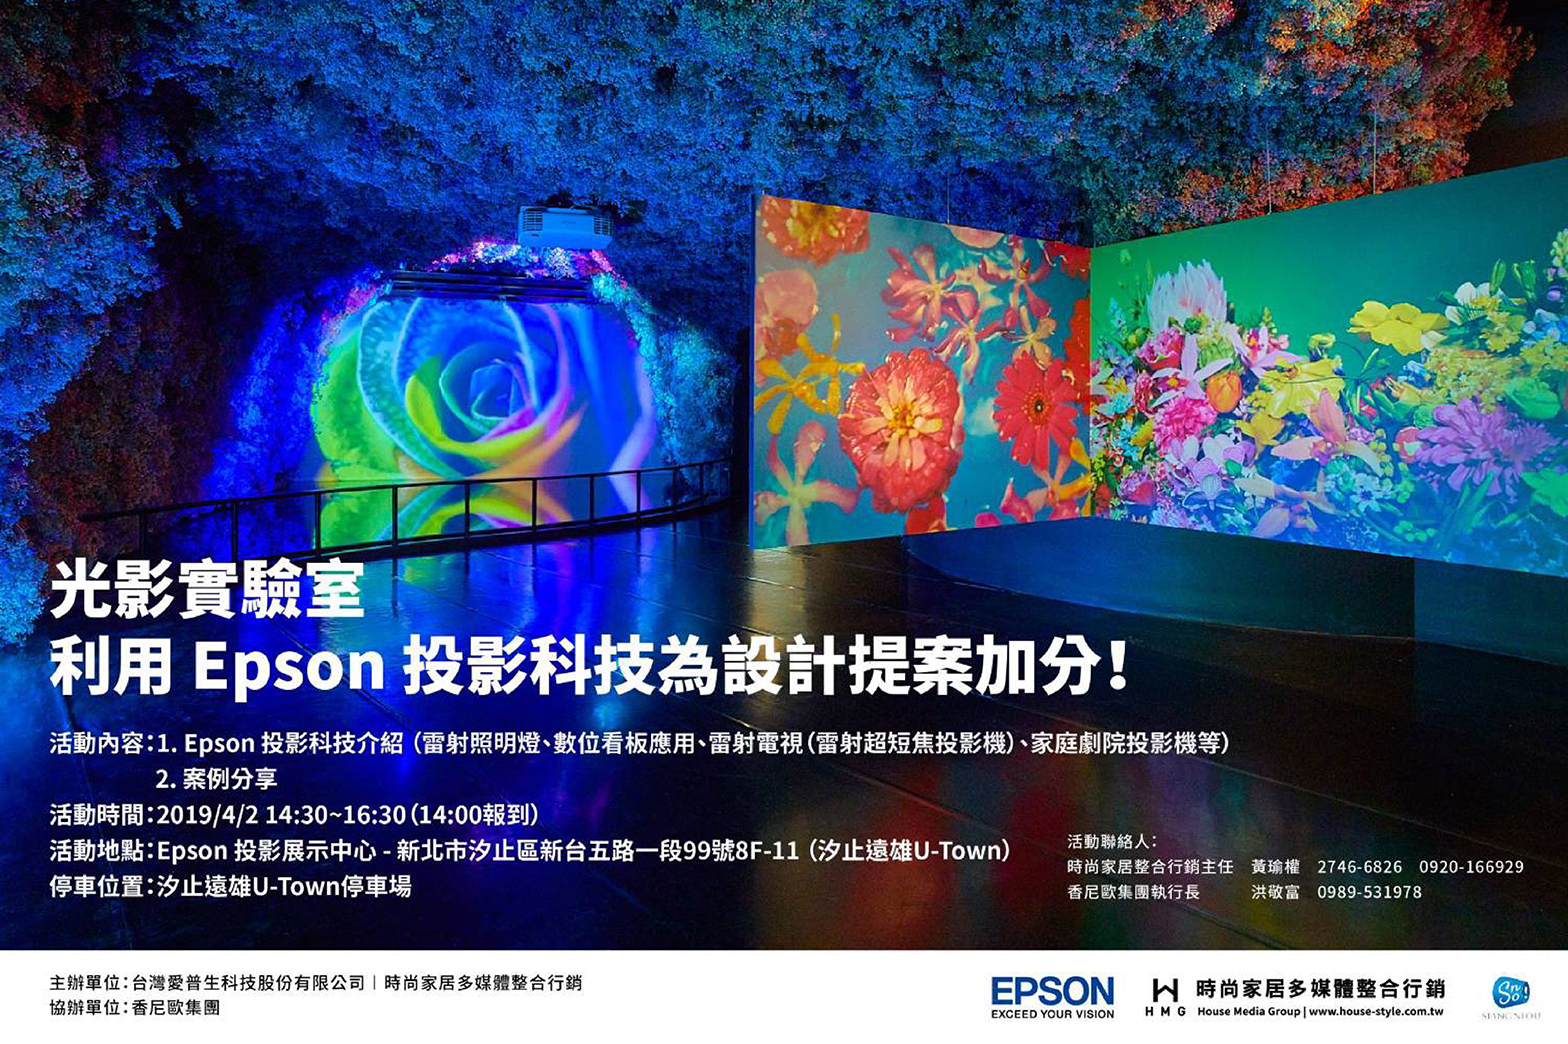 光影實驗室 利用EPSON投影科技為設計提案加分